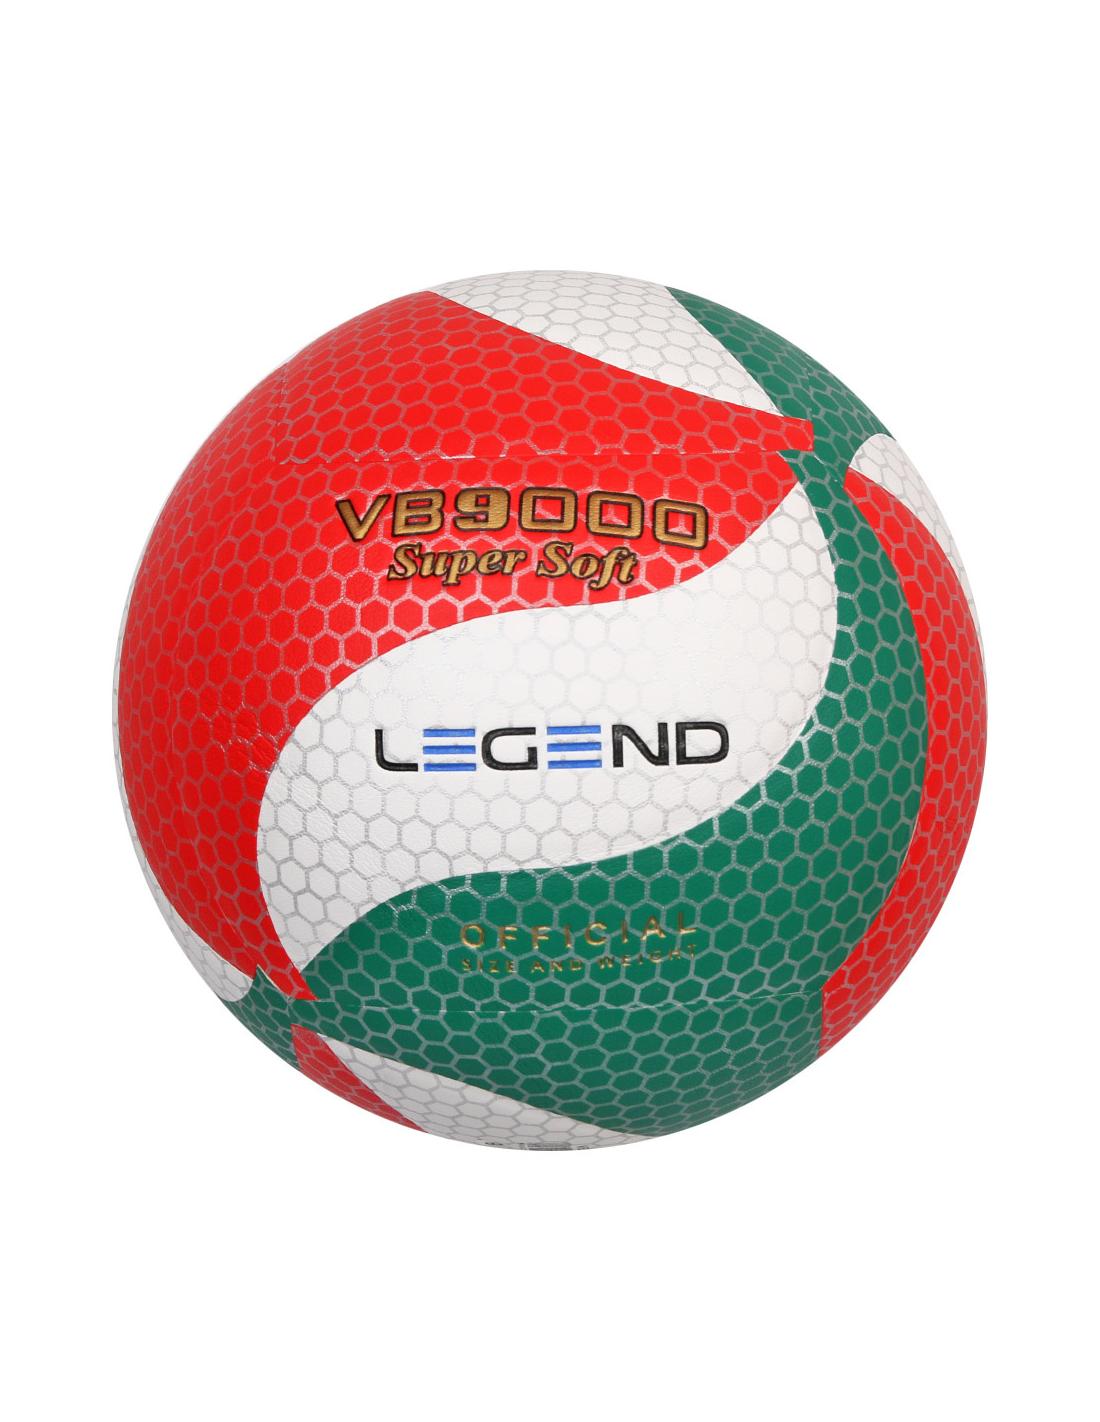 Piłka siatkowa VB9000 4 Legend biało-czerwono-zielony